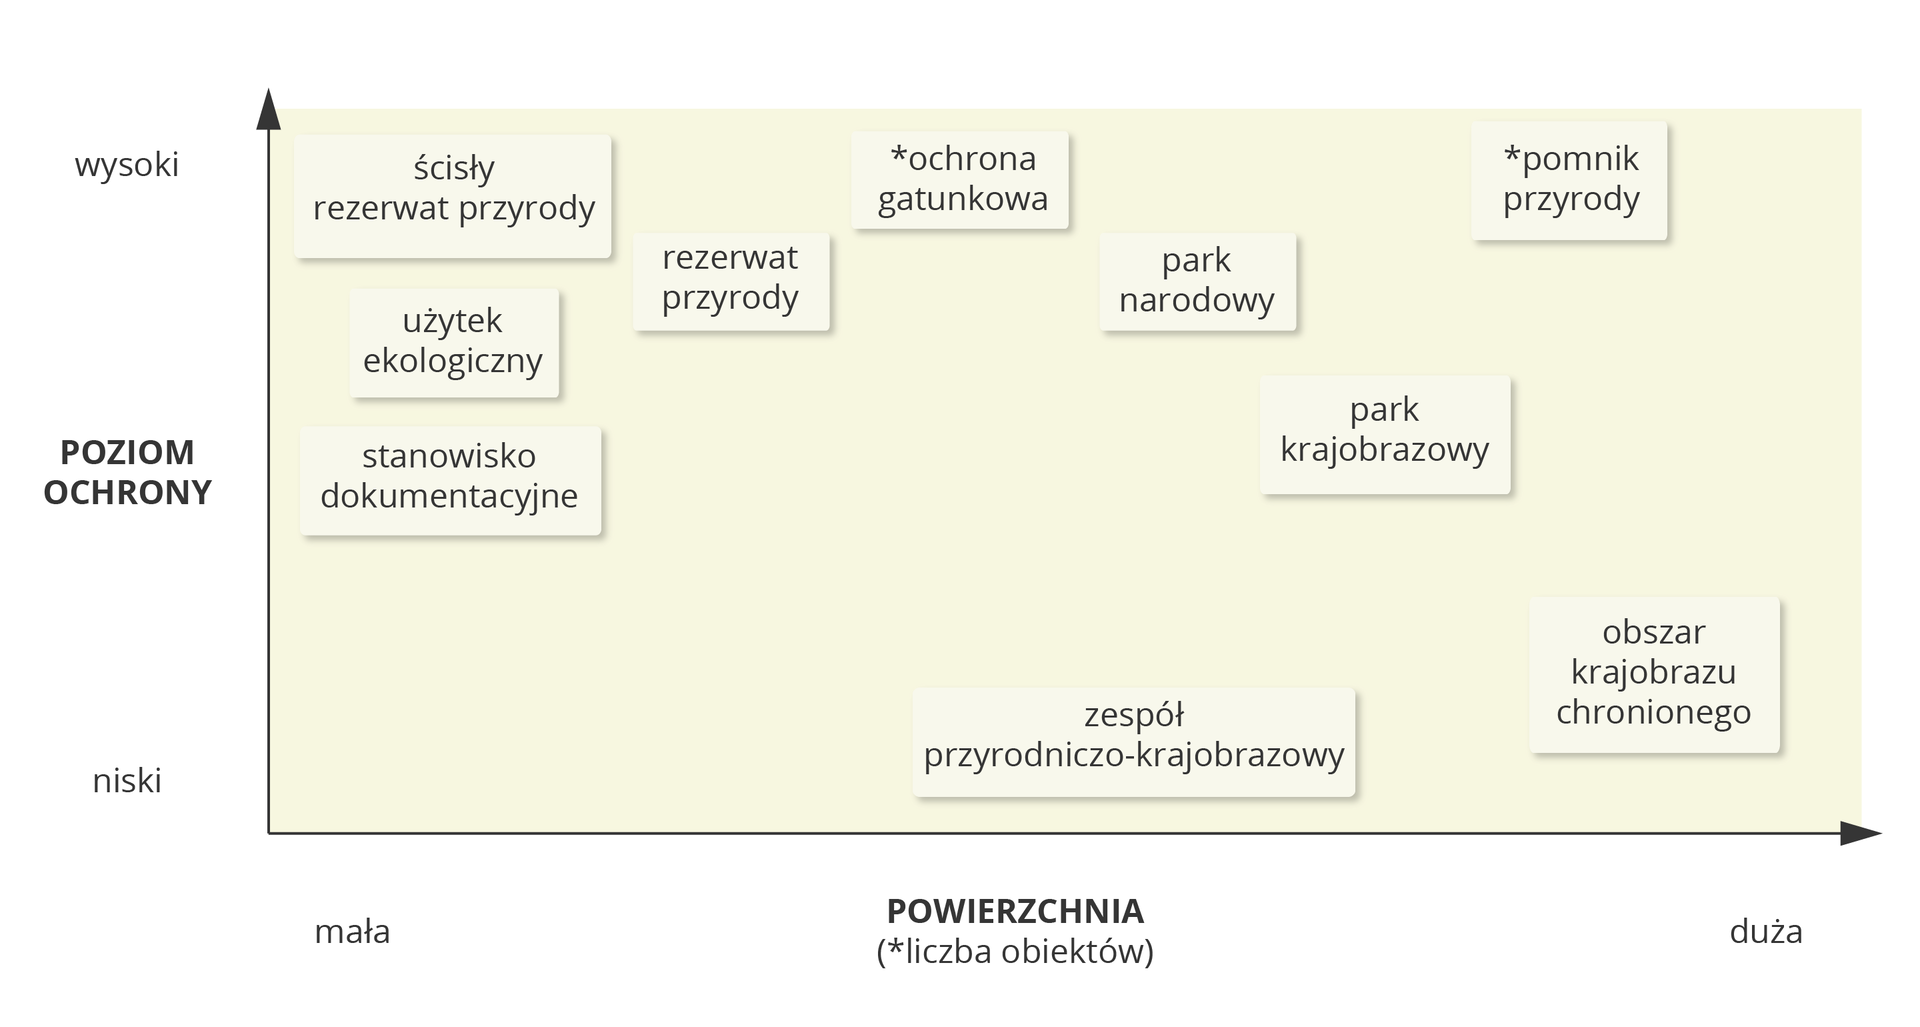 Wykres przedstawiający poziom ochrony i zasięg prawnych form ochrony przyrody w Polsce. wysokiŚcisłyrezerwatprzyrodyOchronagatunkowaPomnikprzyrodyUżytekekologicznyRezerwatprzyrodyParknarodowyPoziomochronyStanowiskodokumentacyjneParkkrajobrazowyniskiZespółprzyrodniczo-krajobrazowyObszarchronionegokrajobrazumałaPowierzchnia(liczba obiektów)duża